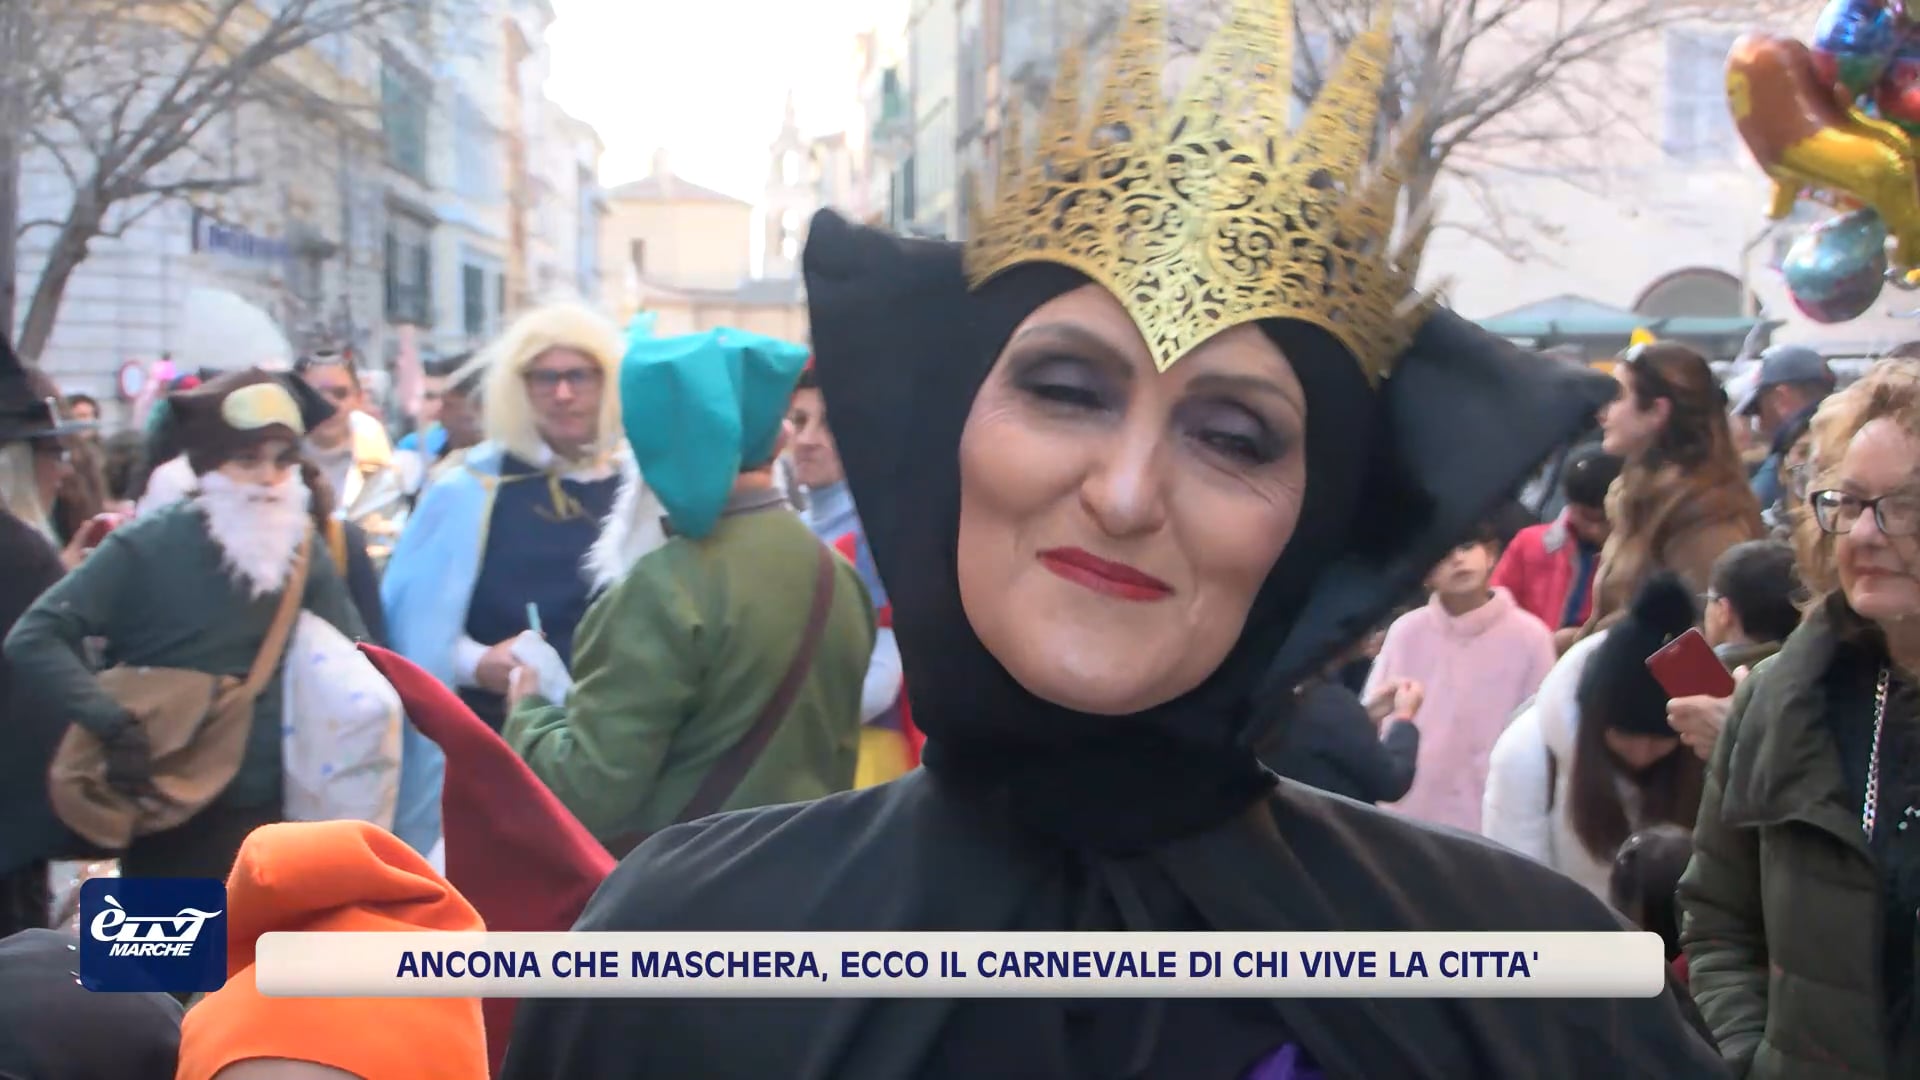 Ancona che maschera, ecco il Carnevale di chi vive la città - VIDEO